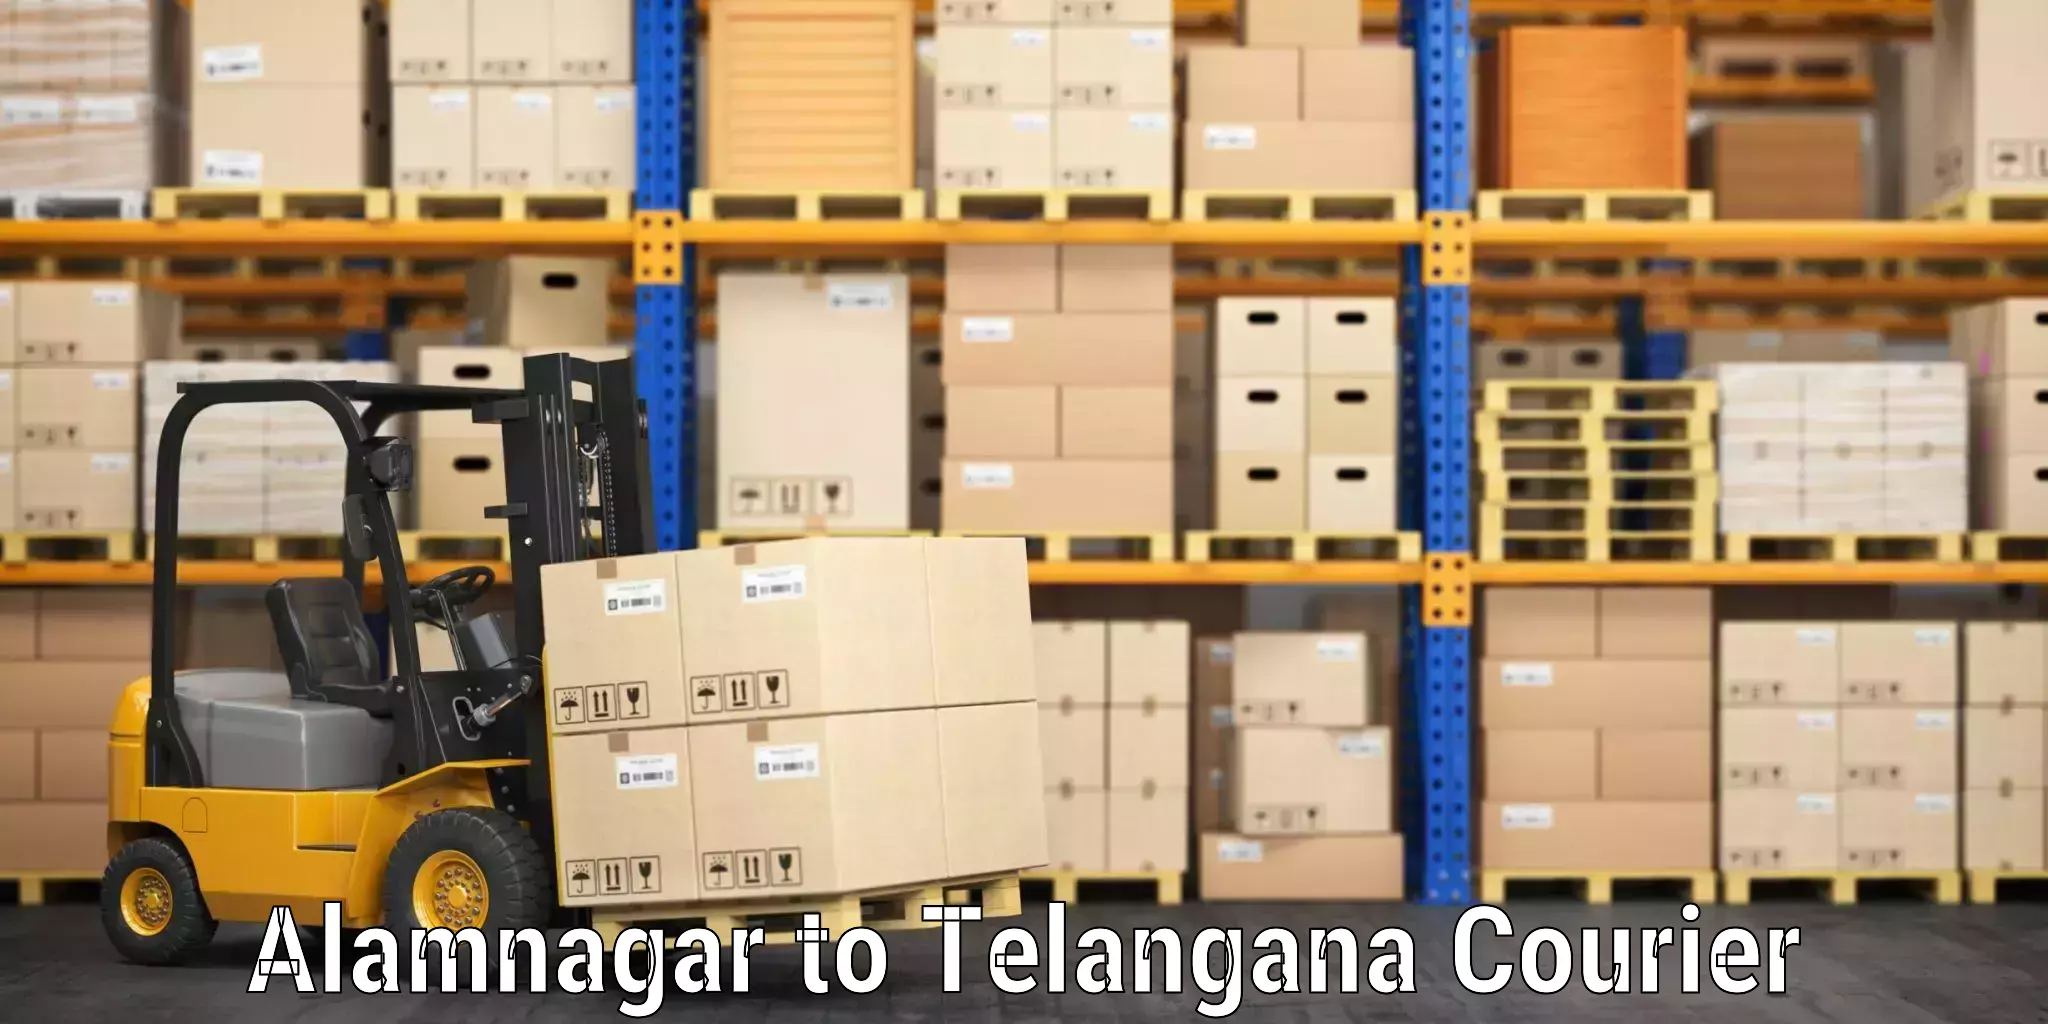 Baggage shipping schedule Alamnagar to Telangana